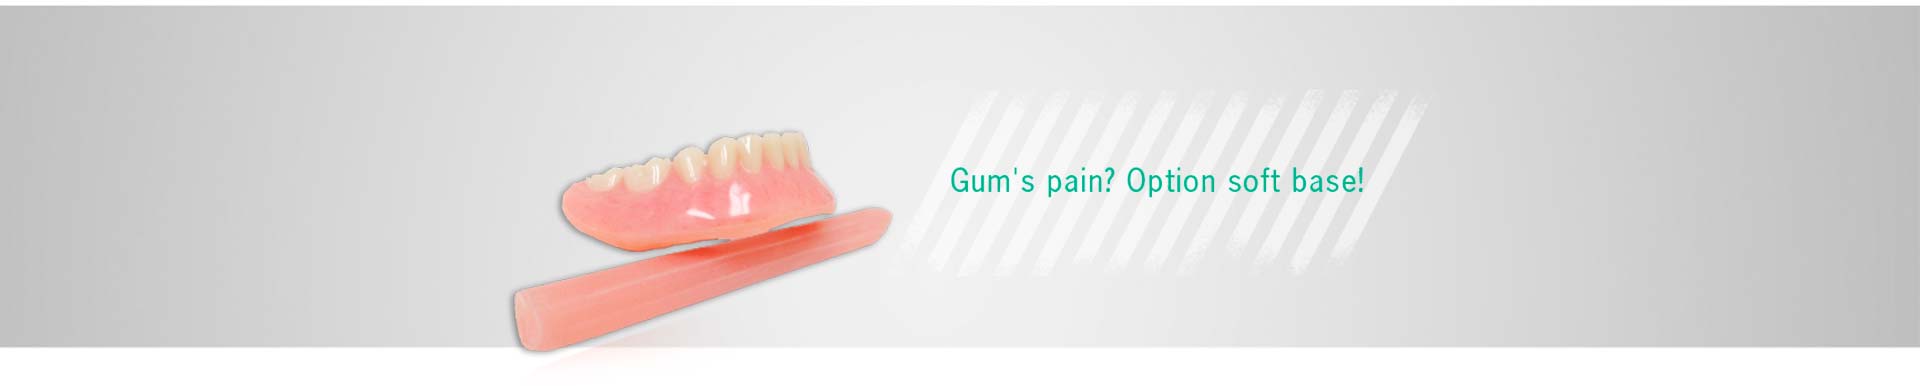 Gum's pain? Option soft base.